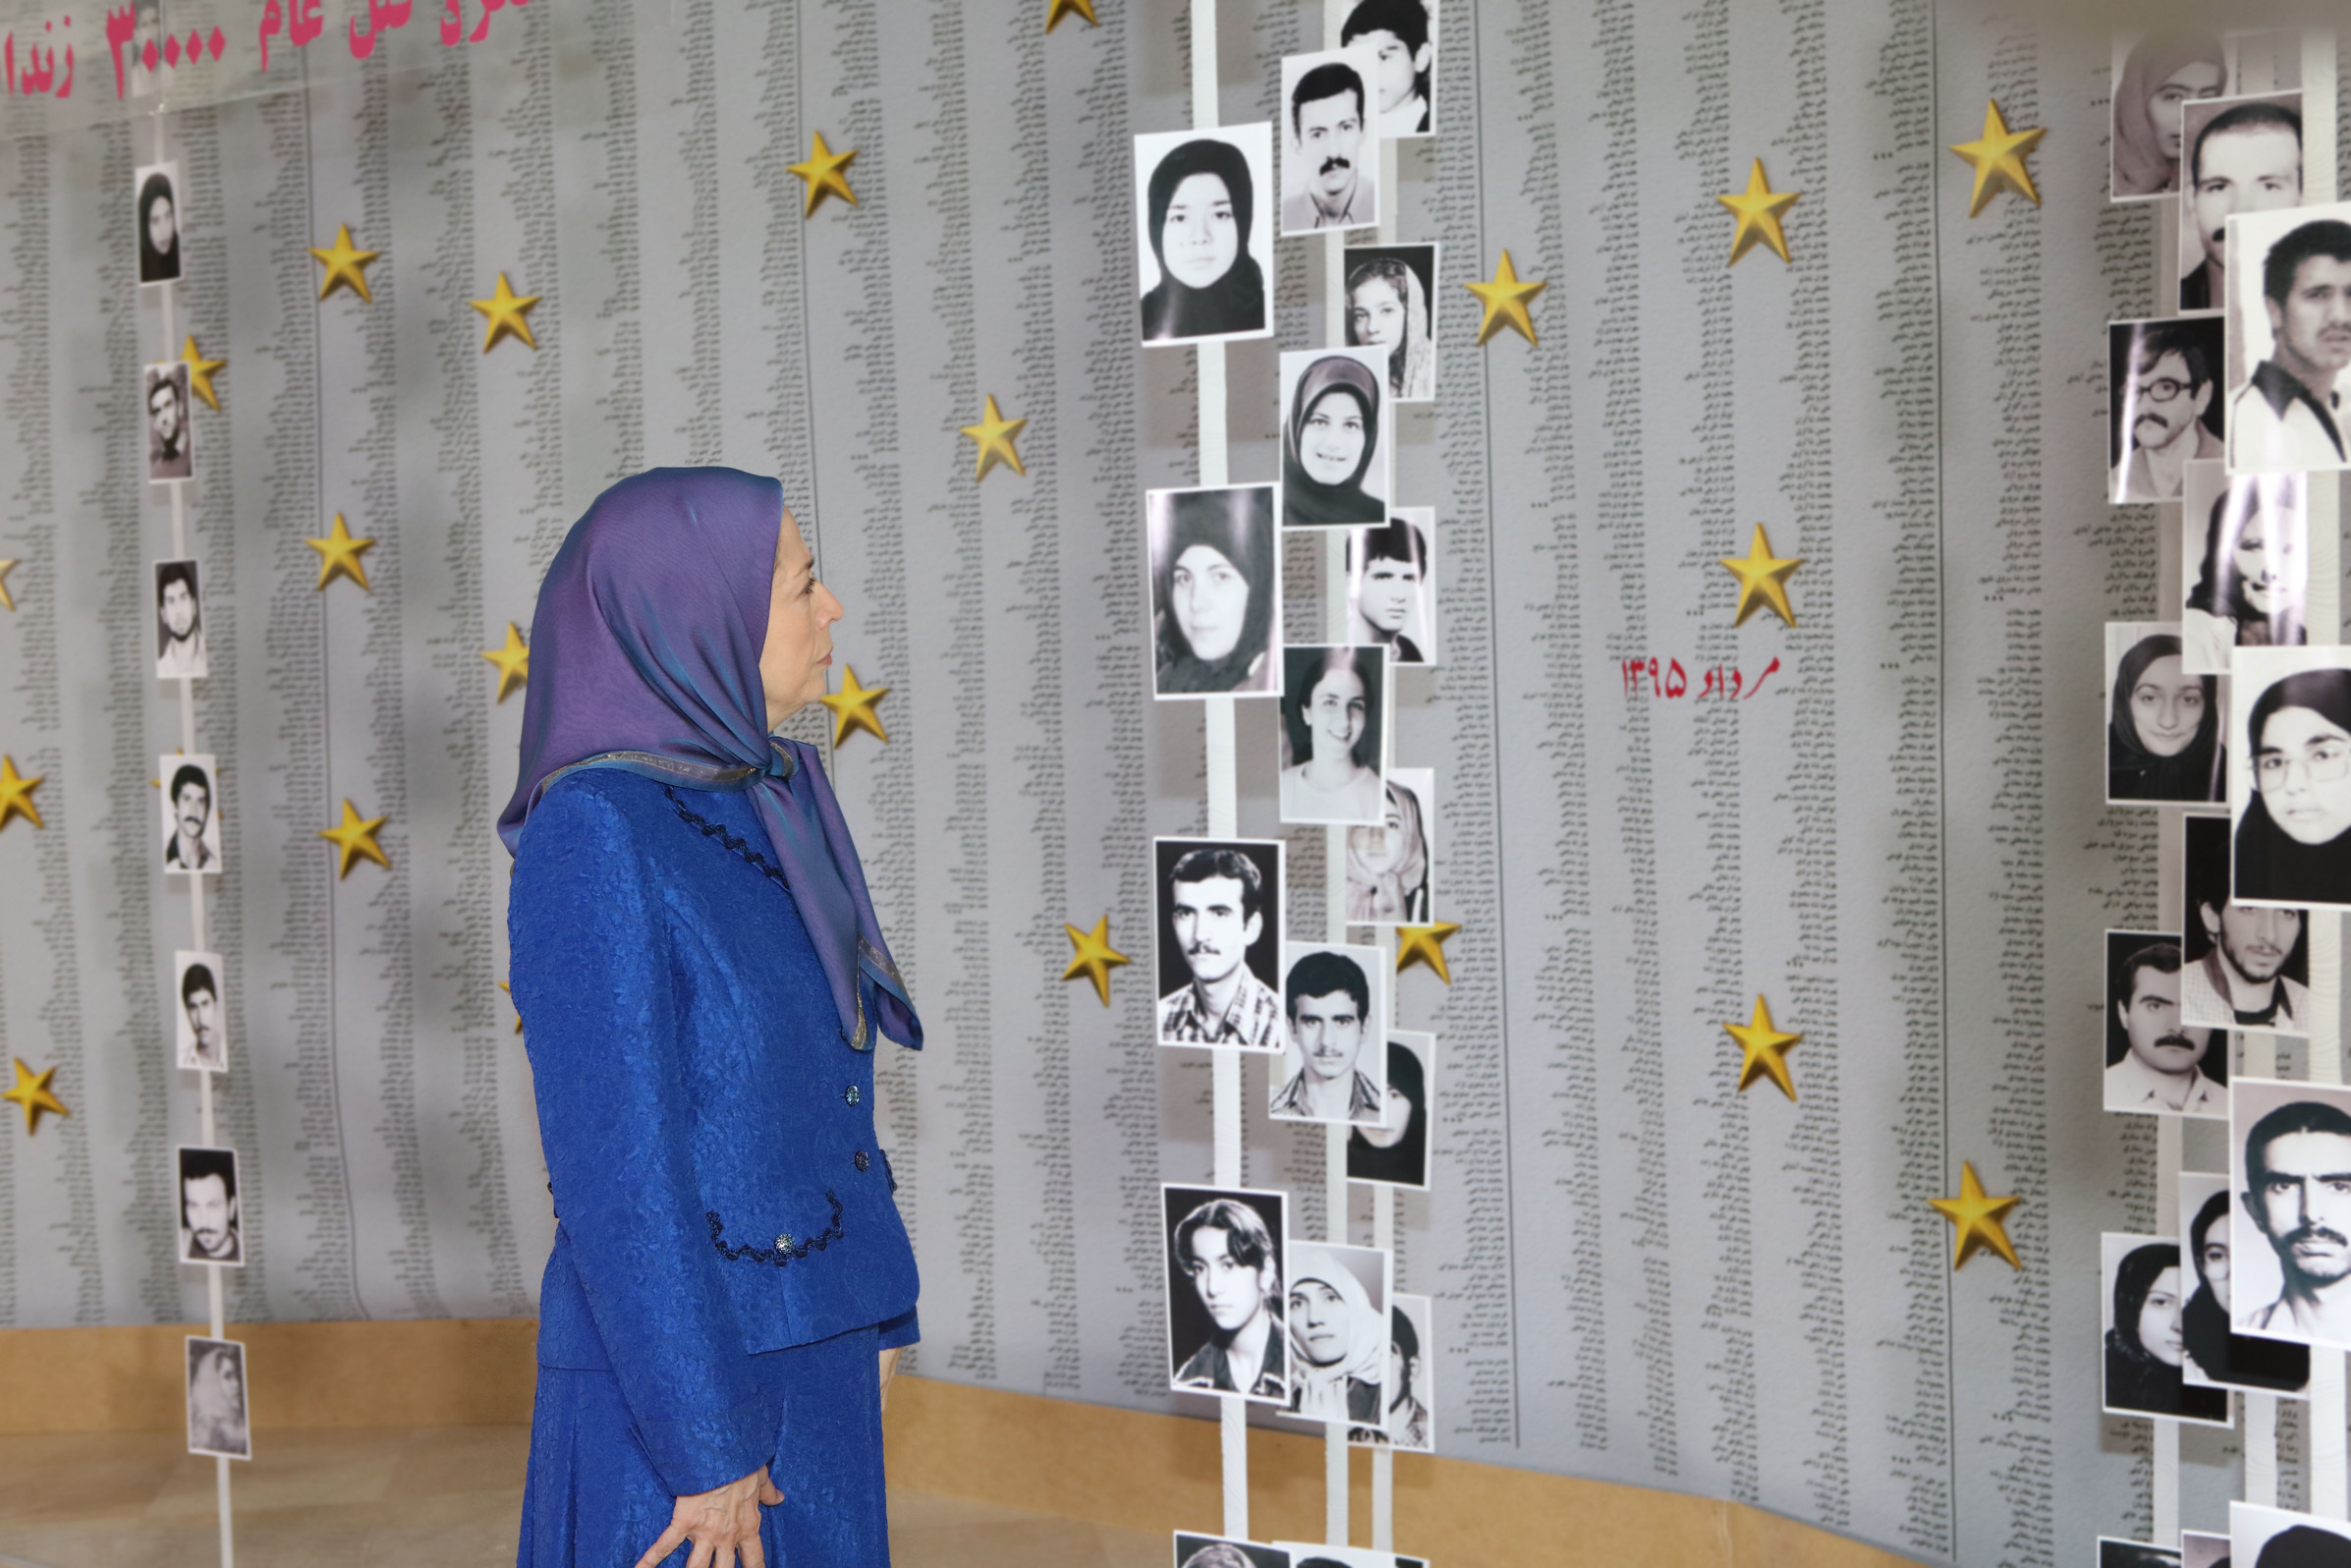 1988 Massacre Iranian Resistance